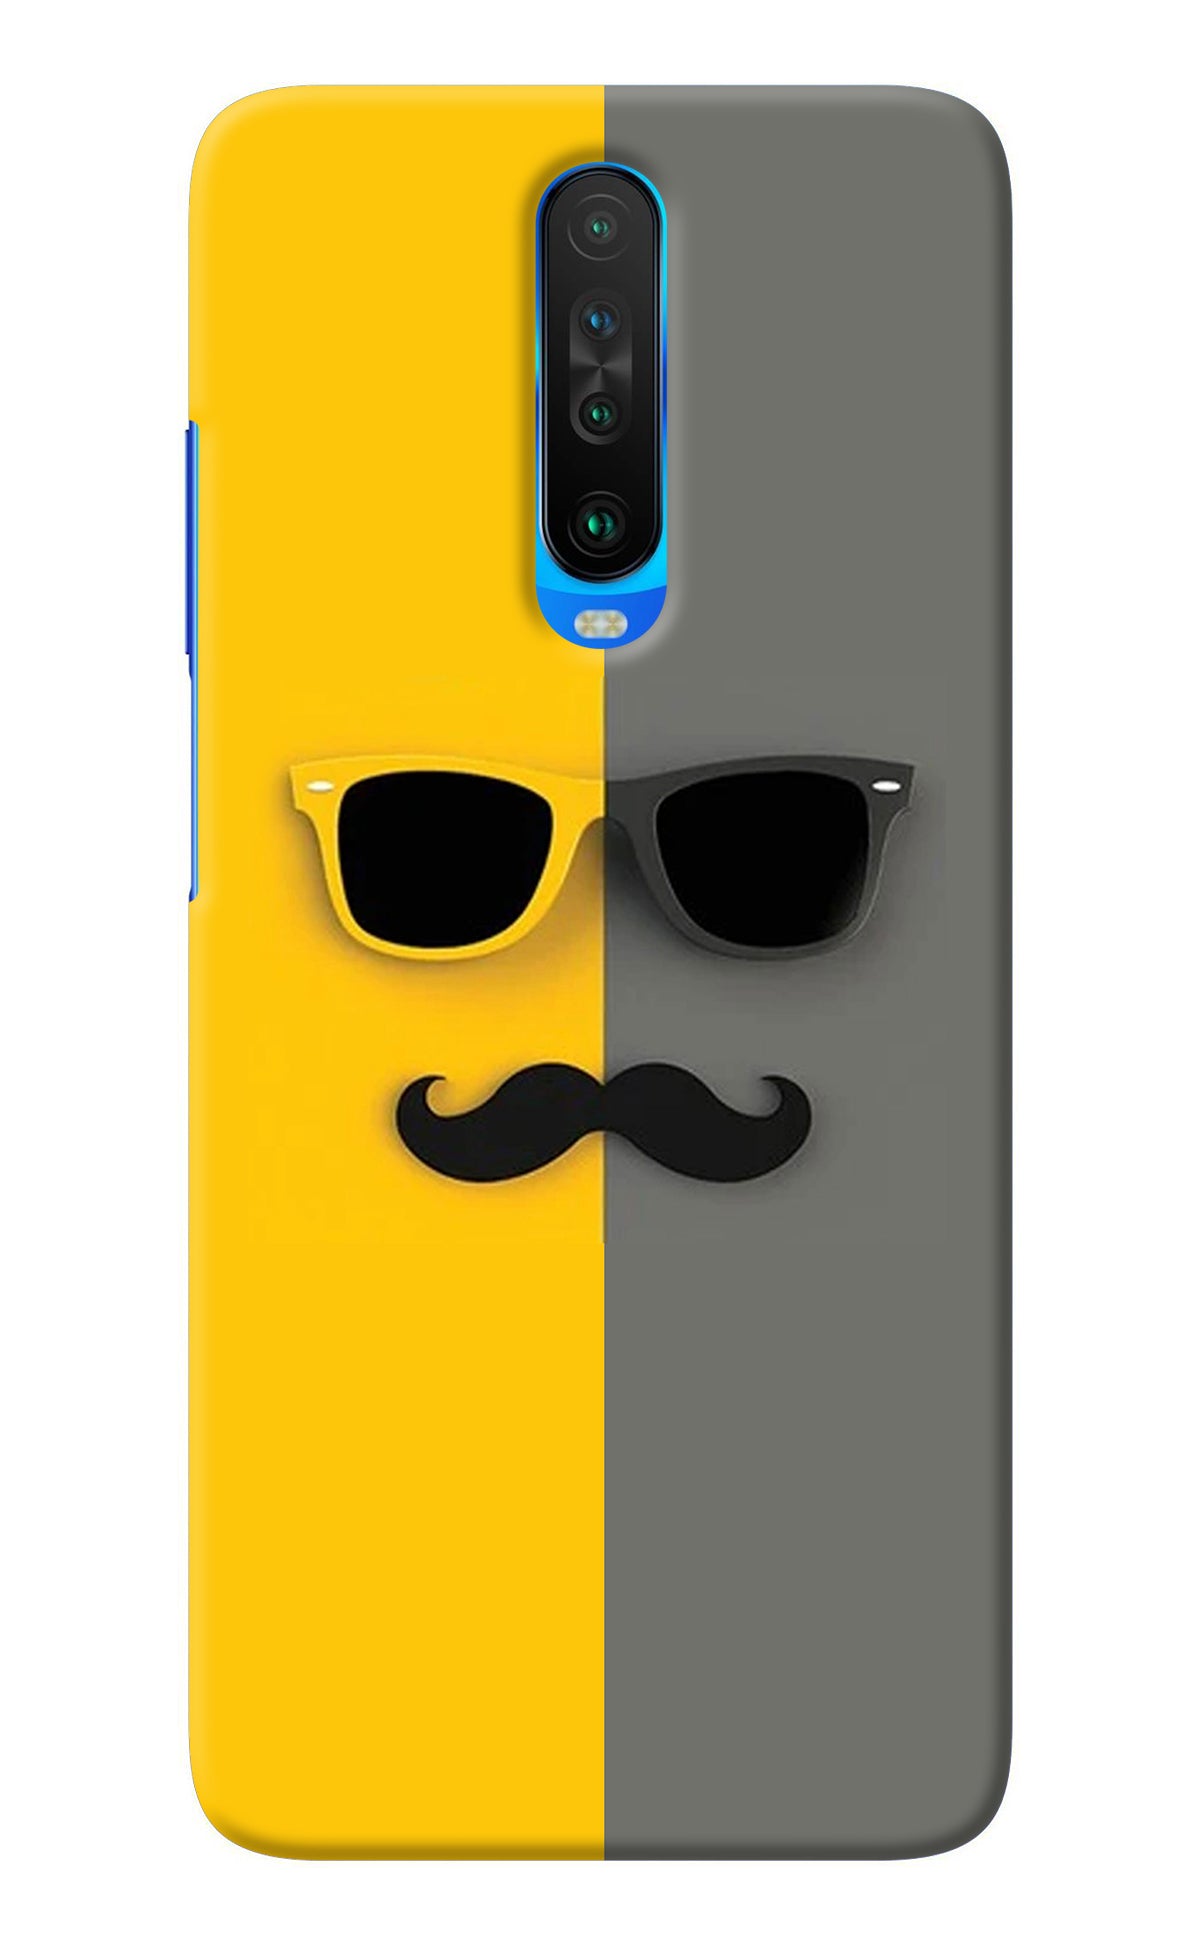 Sunglasses with Mustache Poco X2 Back Cover